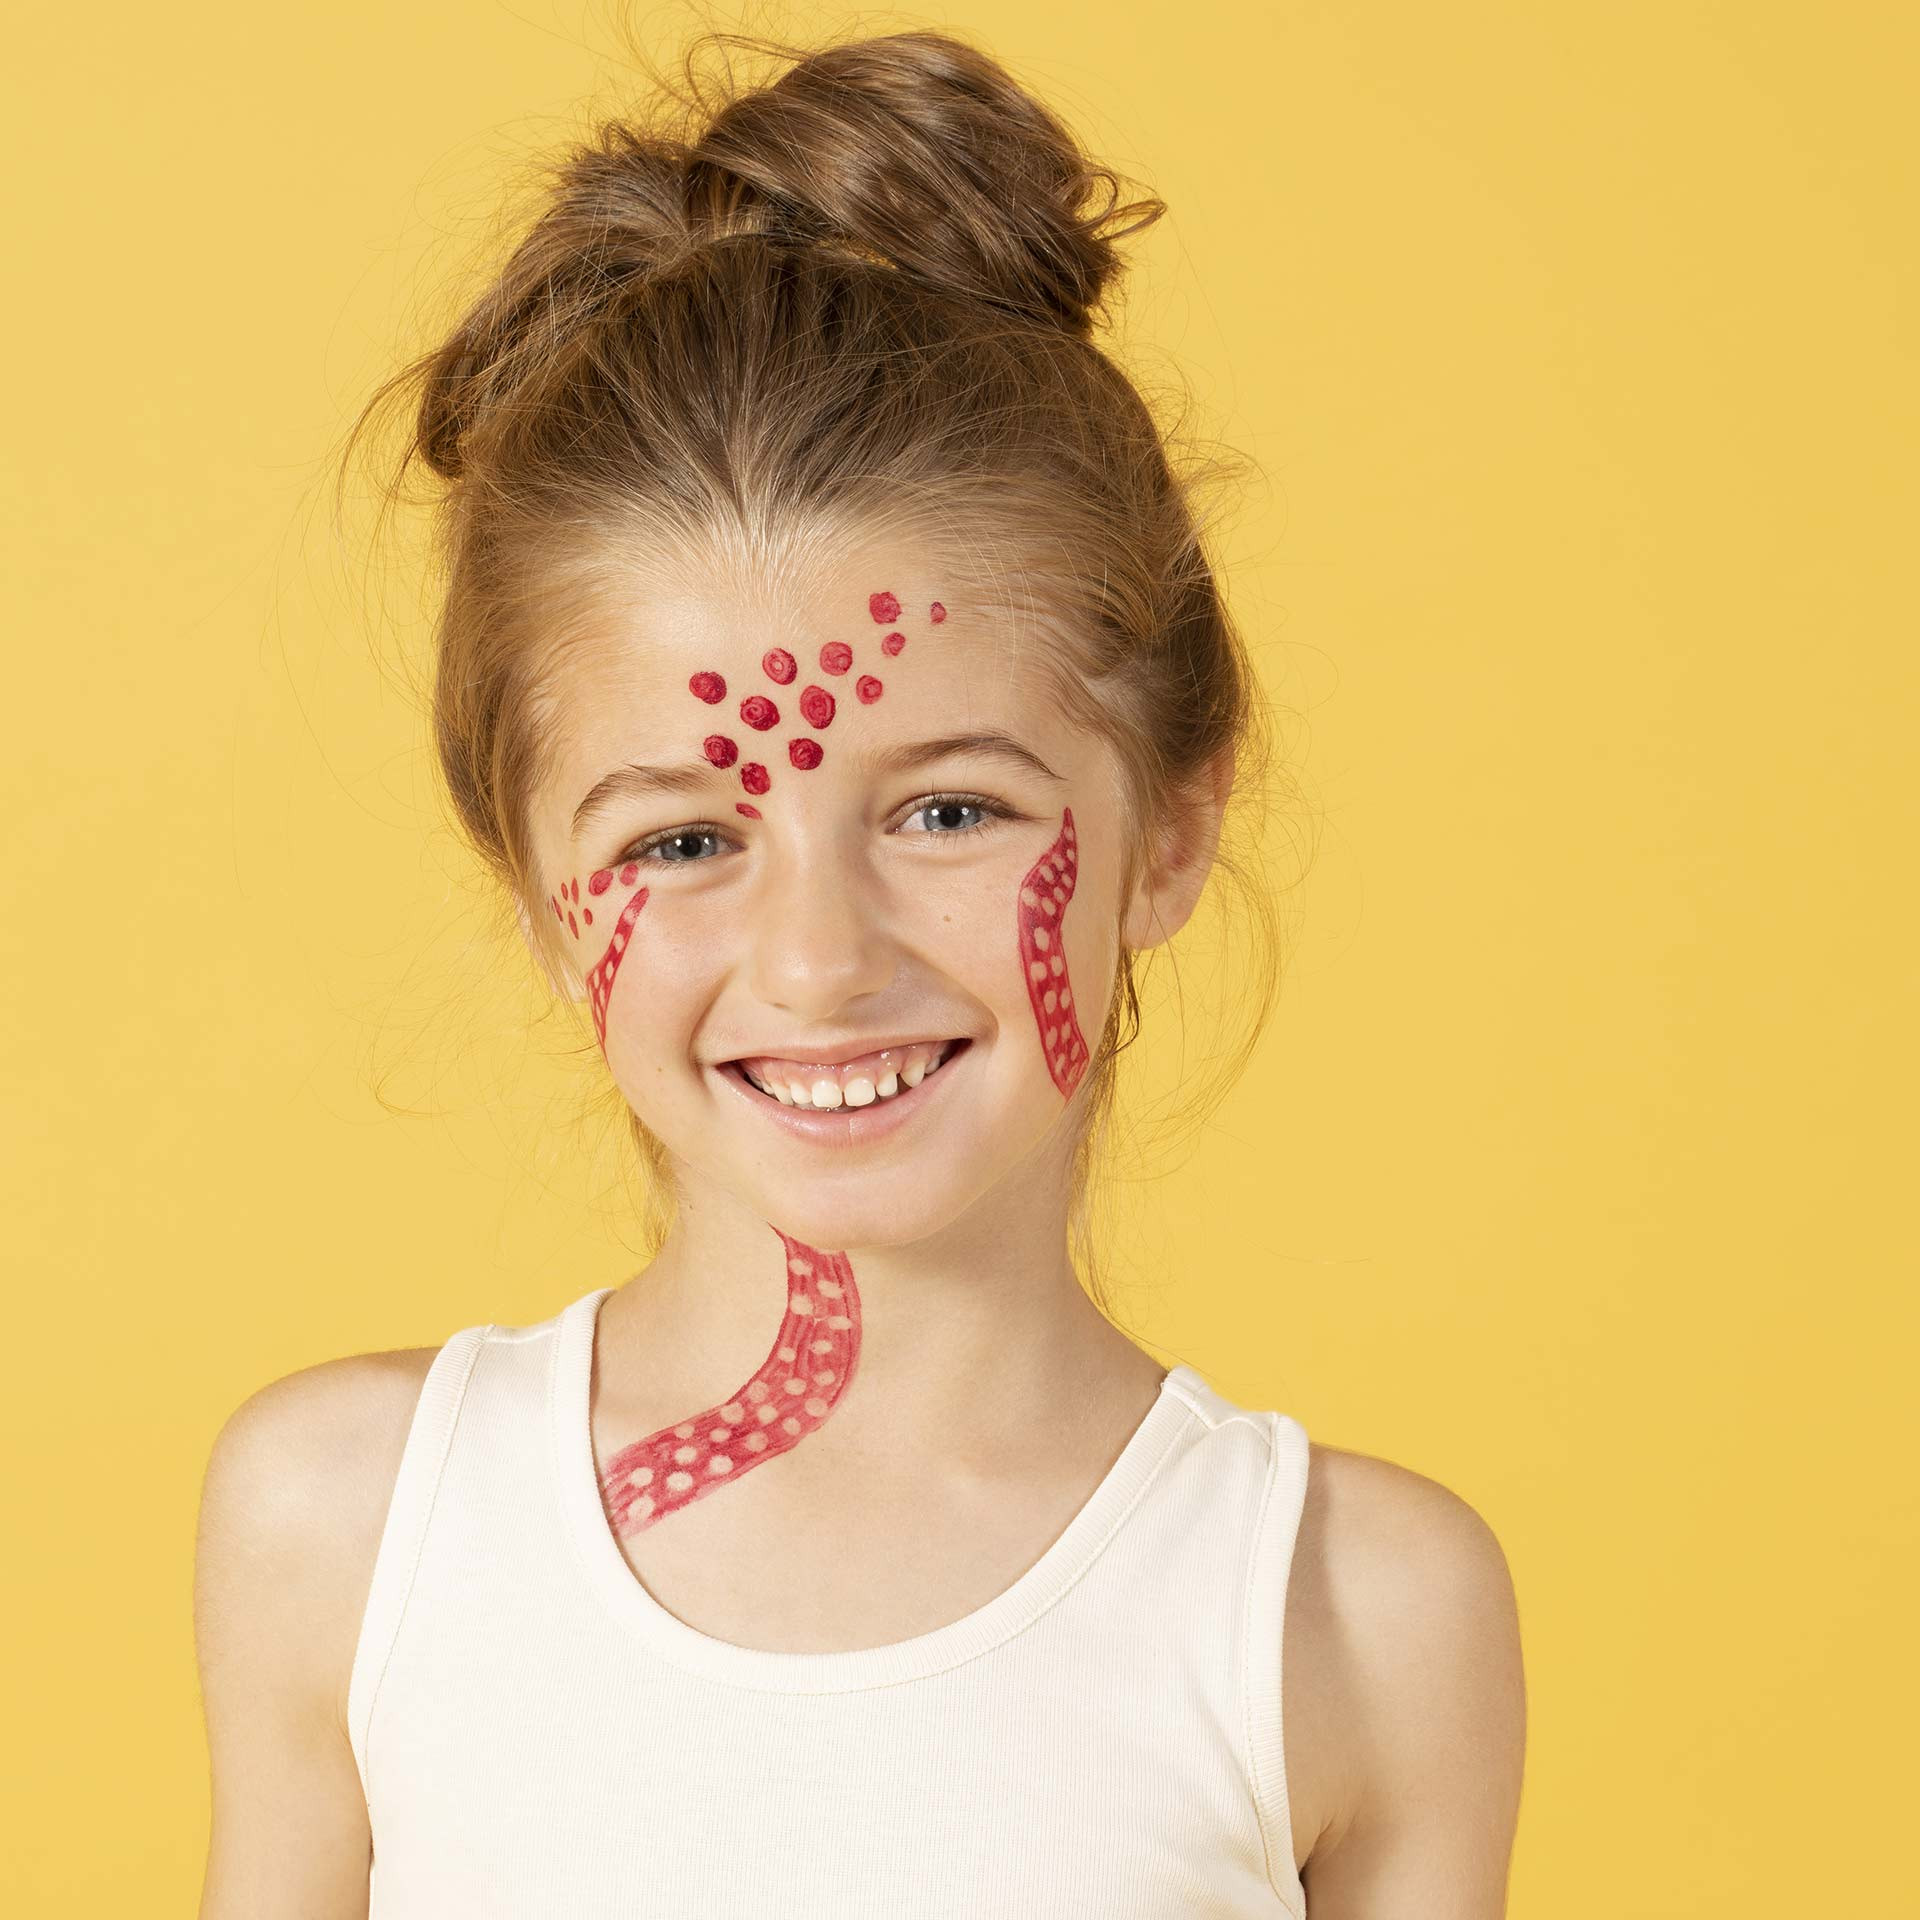 maquillage enfant petite fille dessin sur peau rouge nailmatic kids